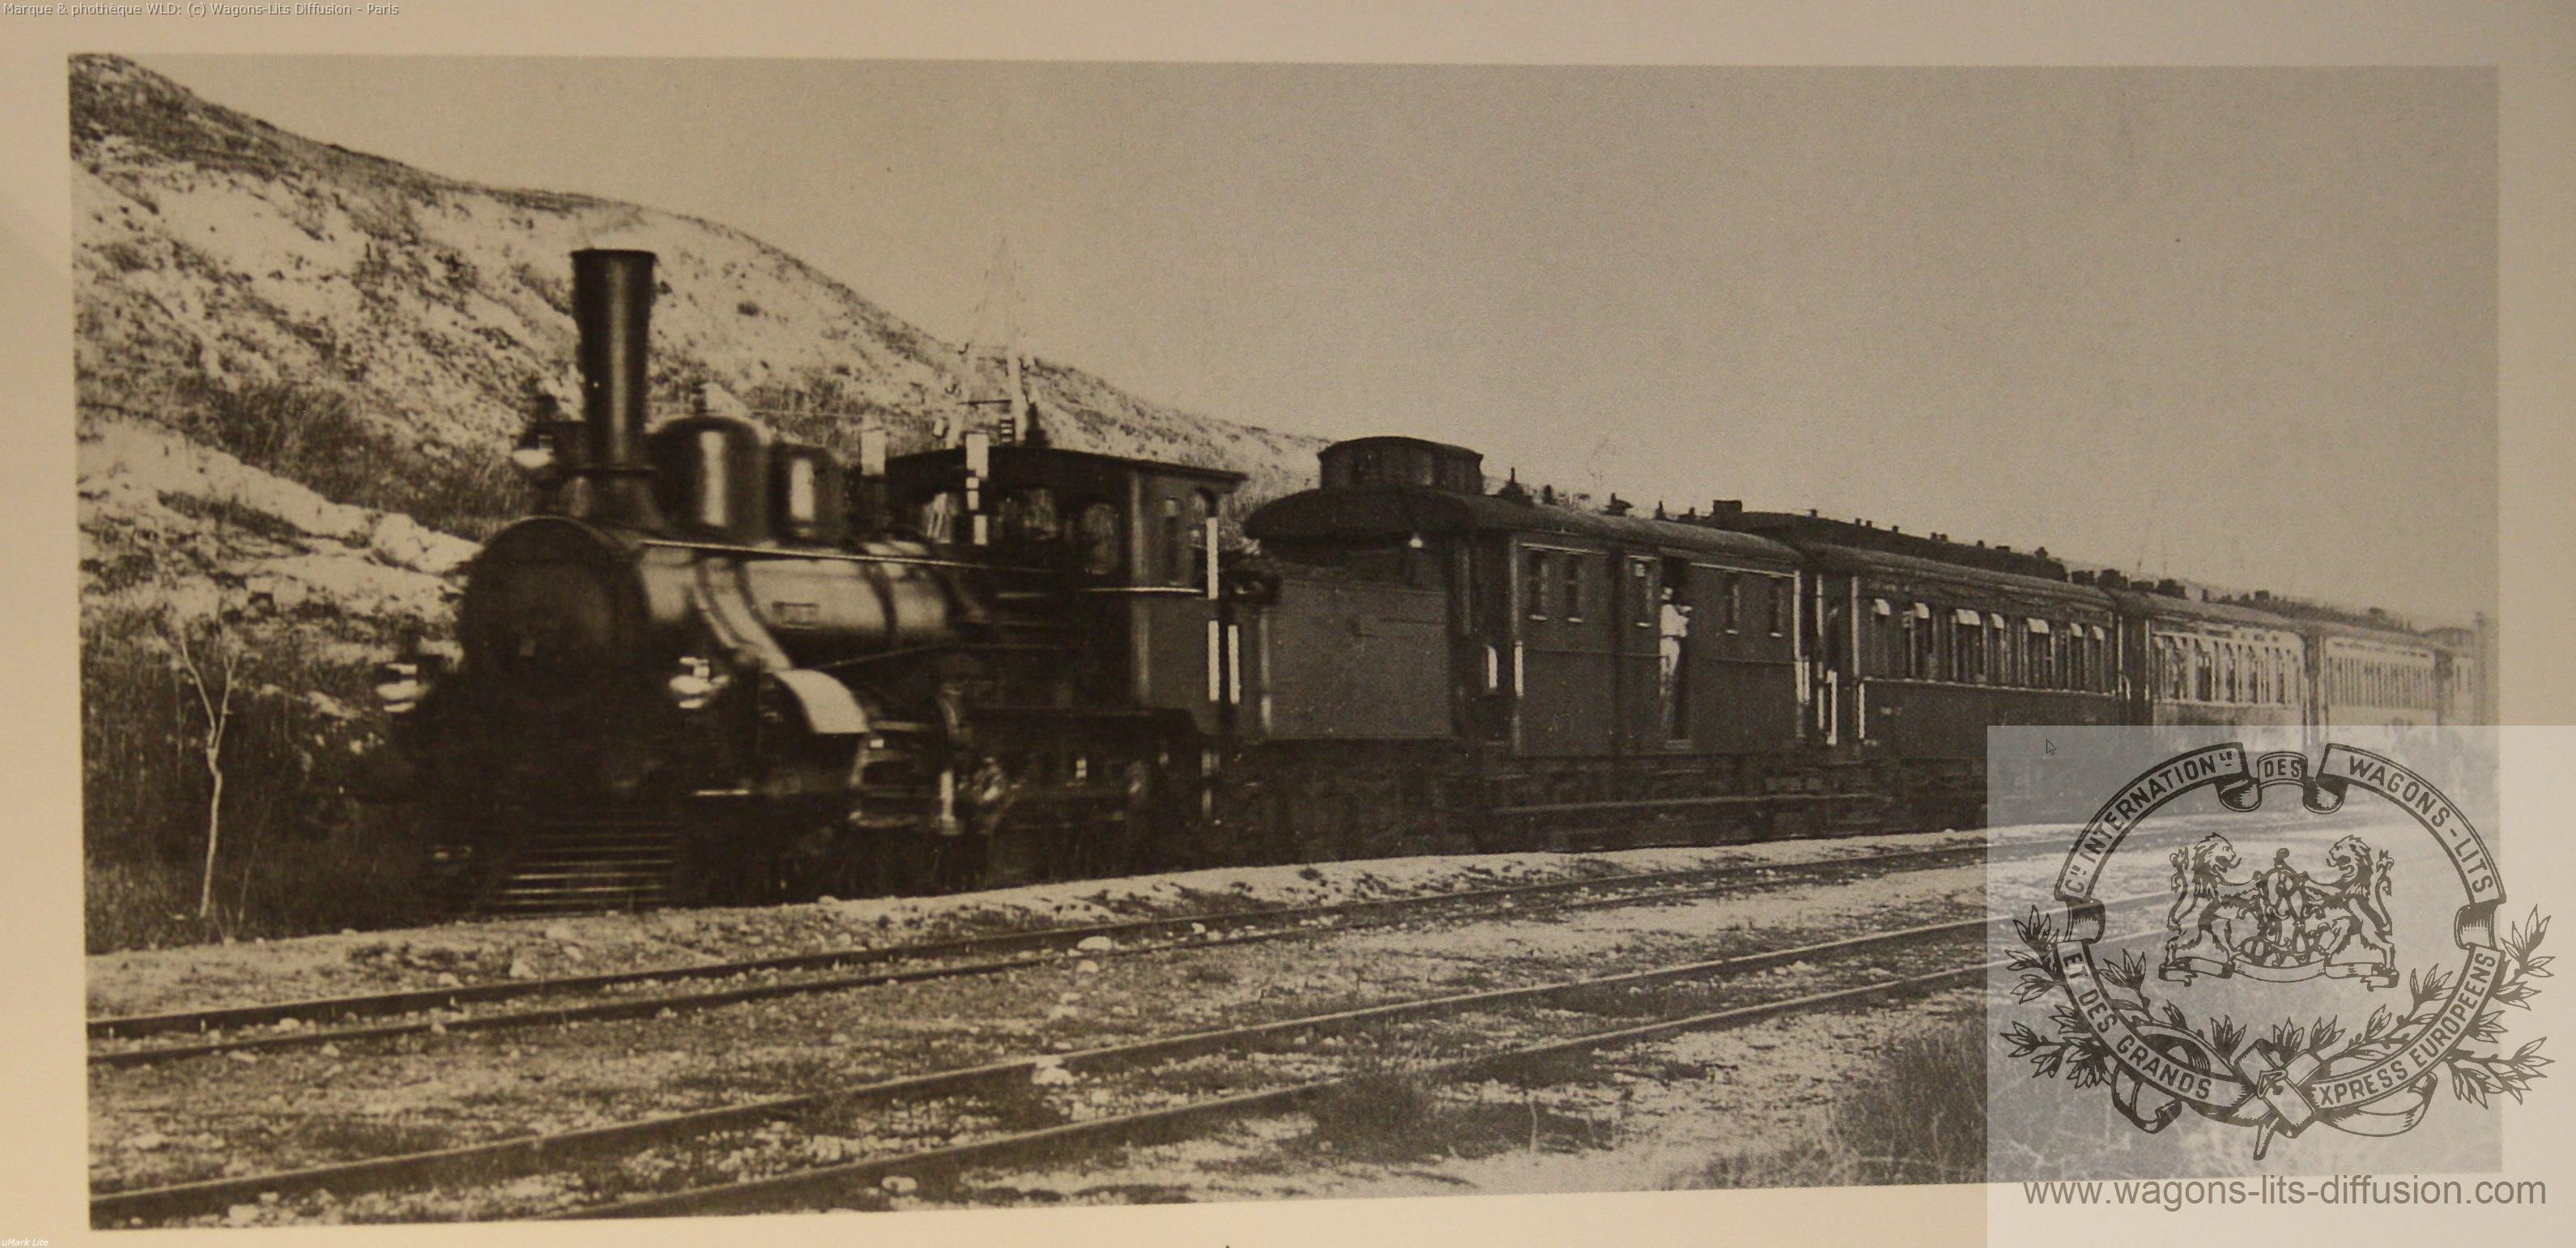 Wl premiere photo de l orient express en 1895 en turquie